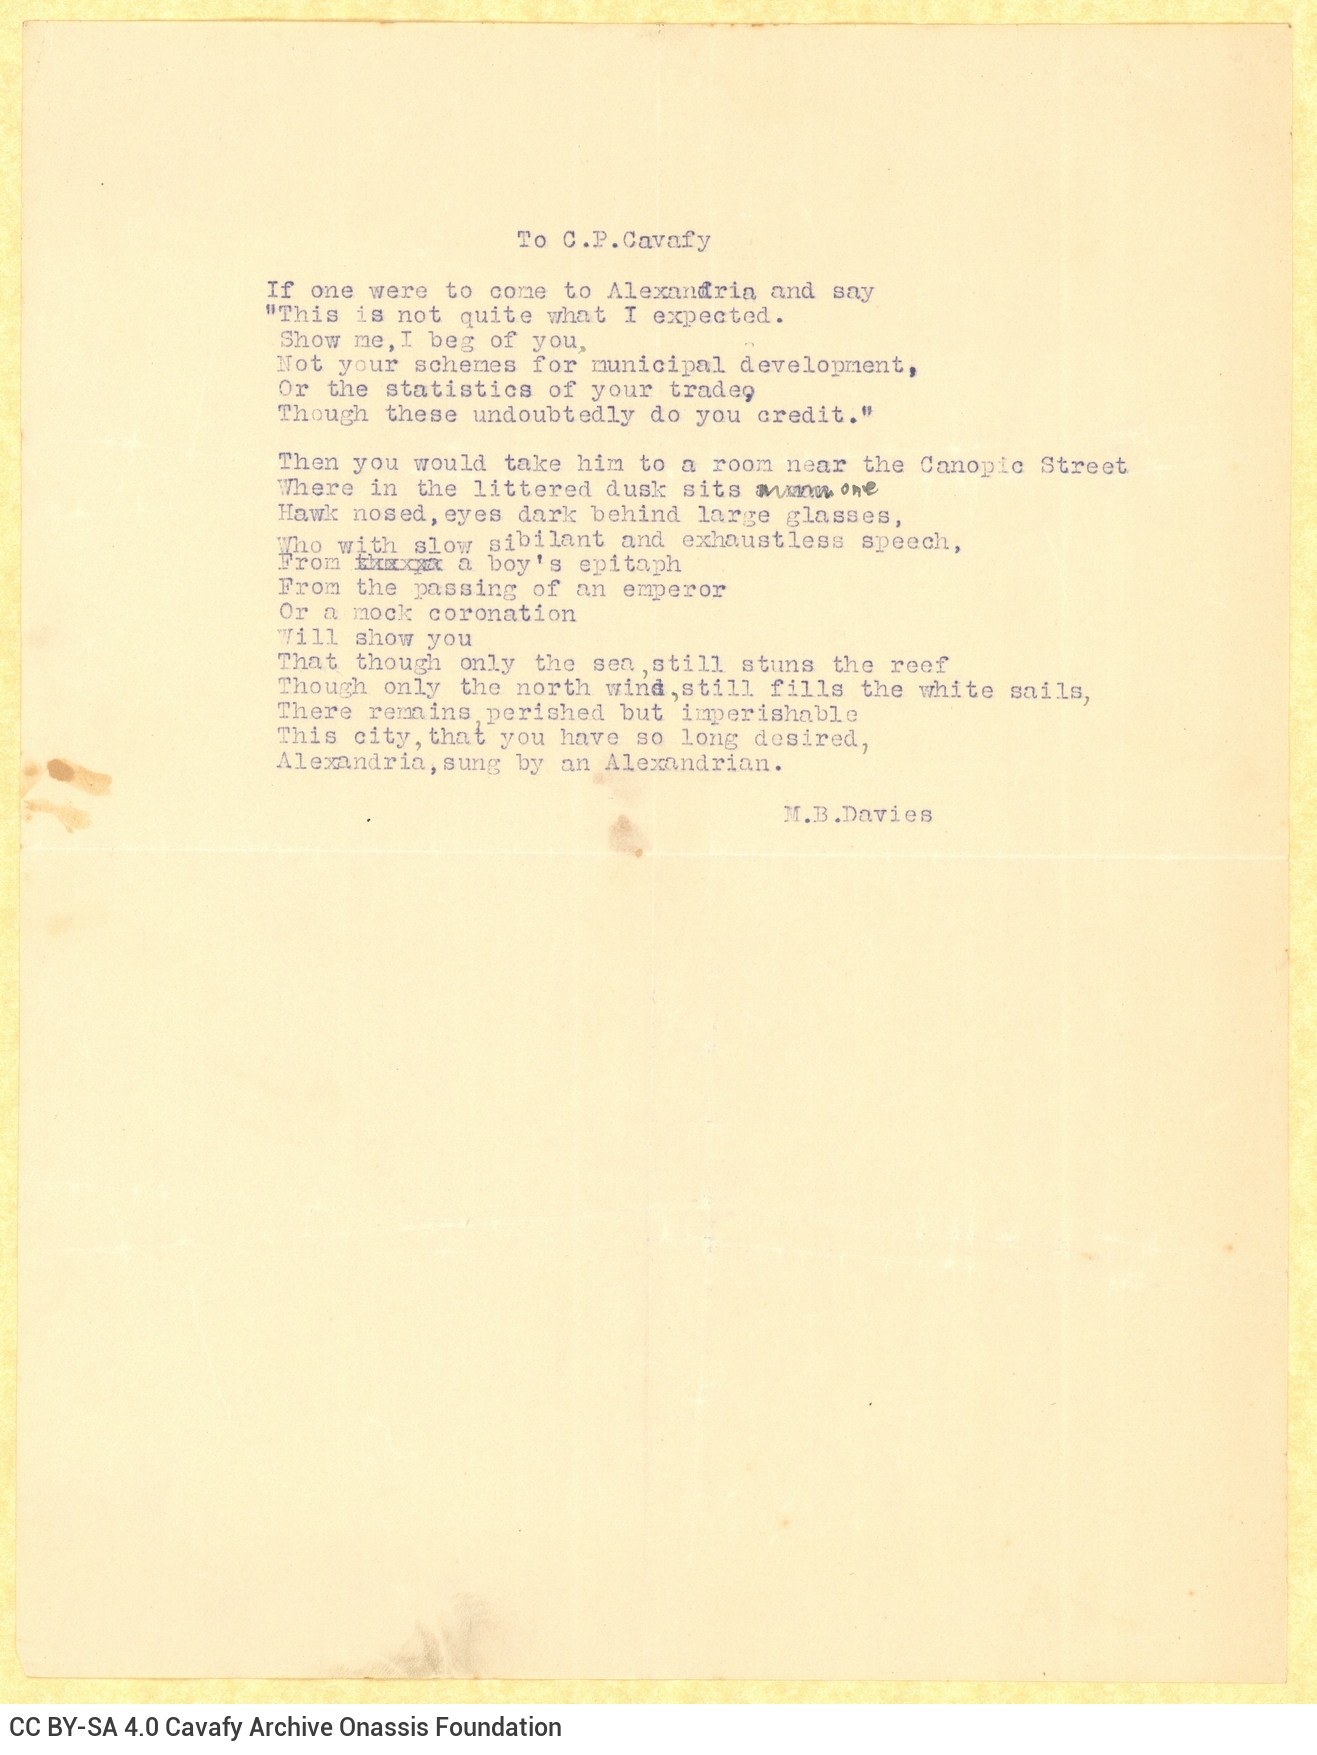 Δακτυλόγραφο ποίημα του Μ. Μπ. Ντέιβις (M. B. Davies) στα αγγλικά, με μία χε�